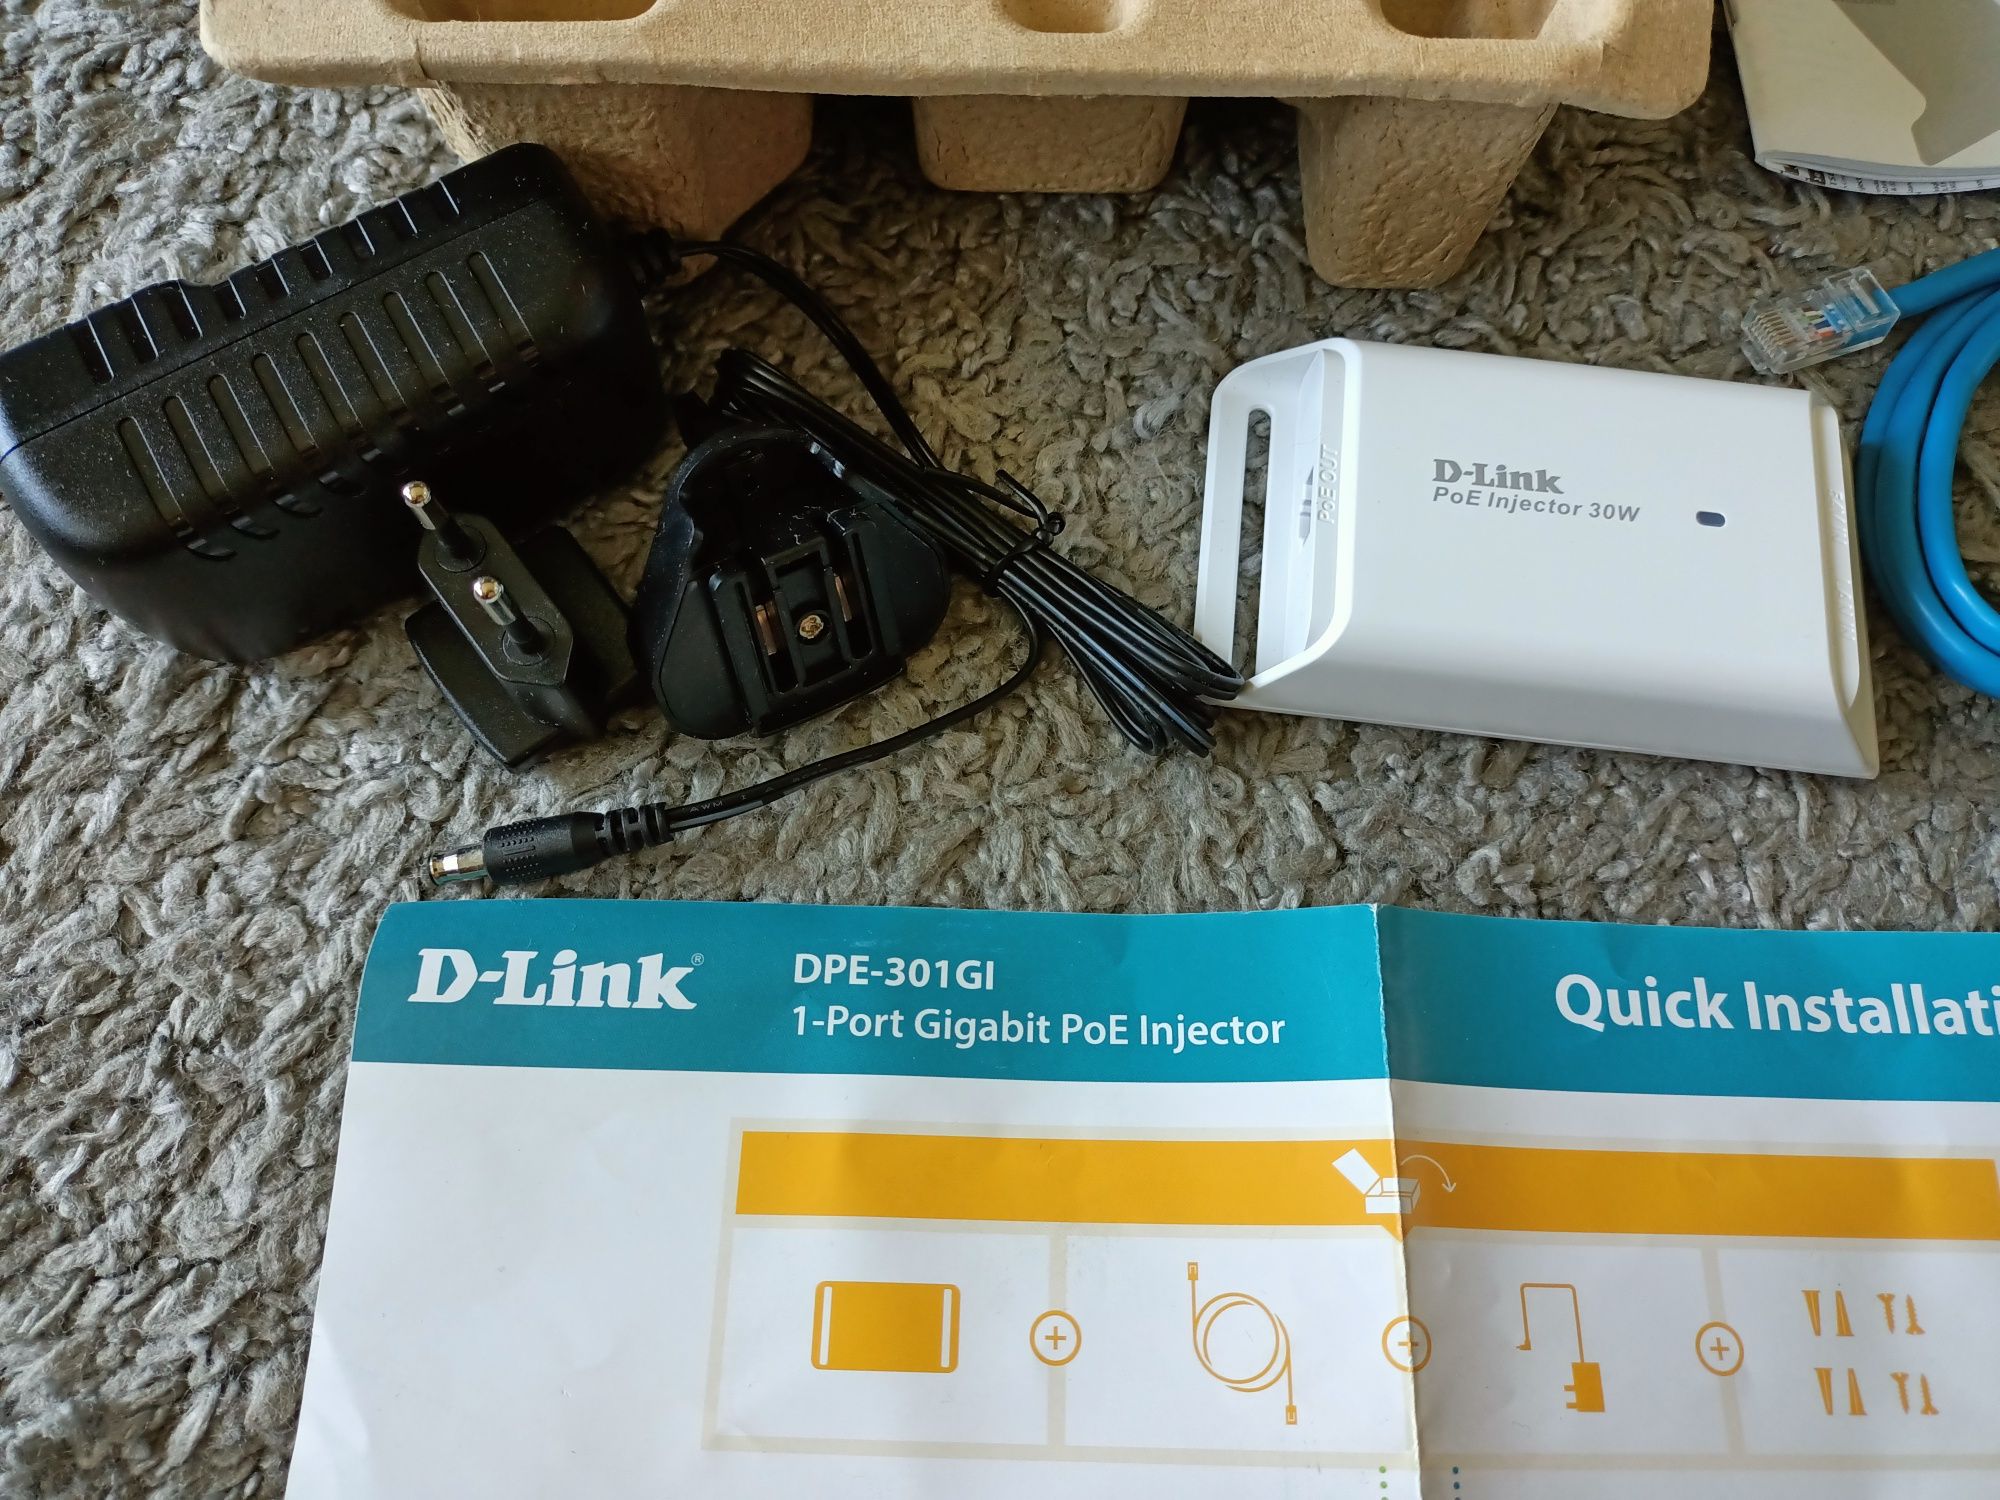 D-Link DPE-301GI Gigabit PoE Injector